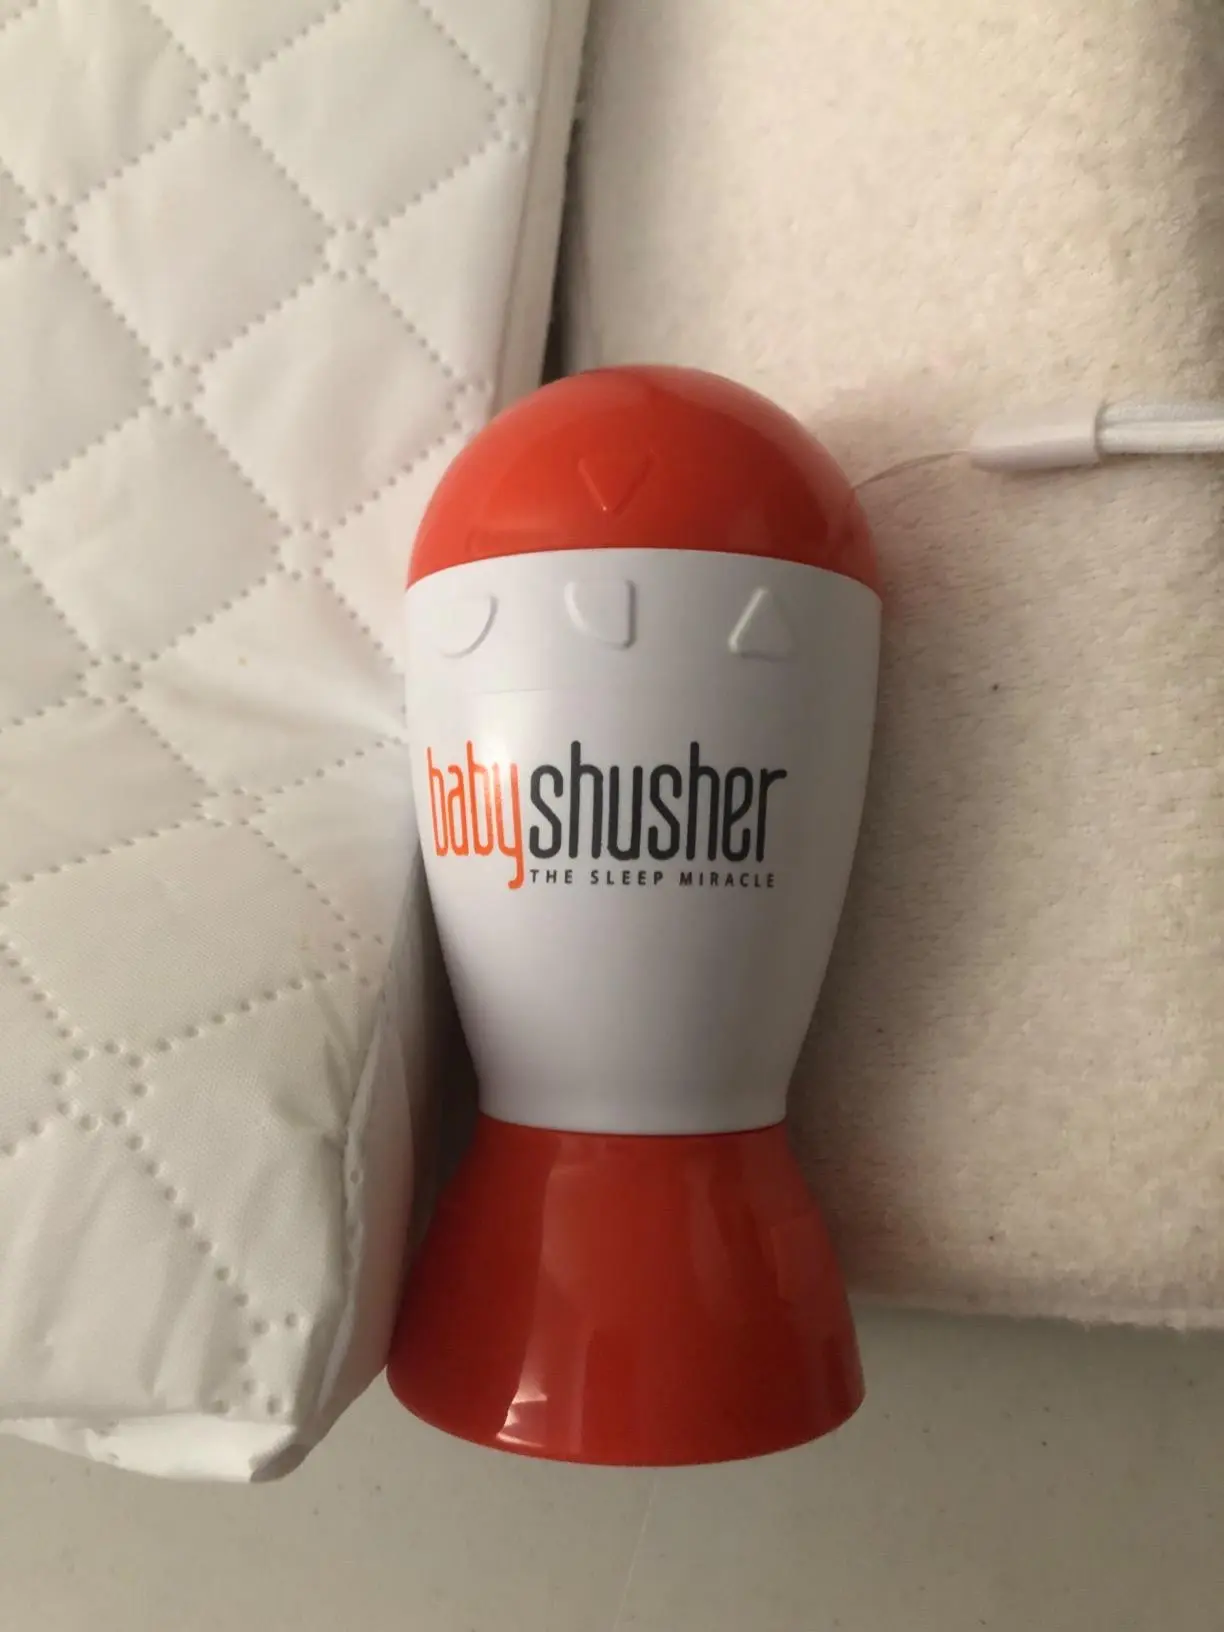 baterias para el baby shusher - Cómo se llama el aparato para dormir a los bebés